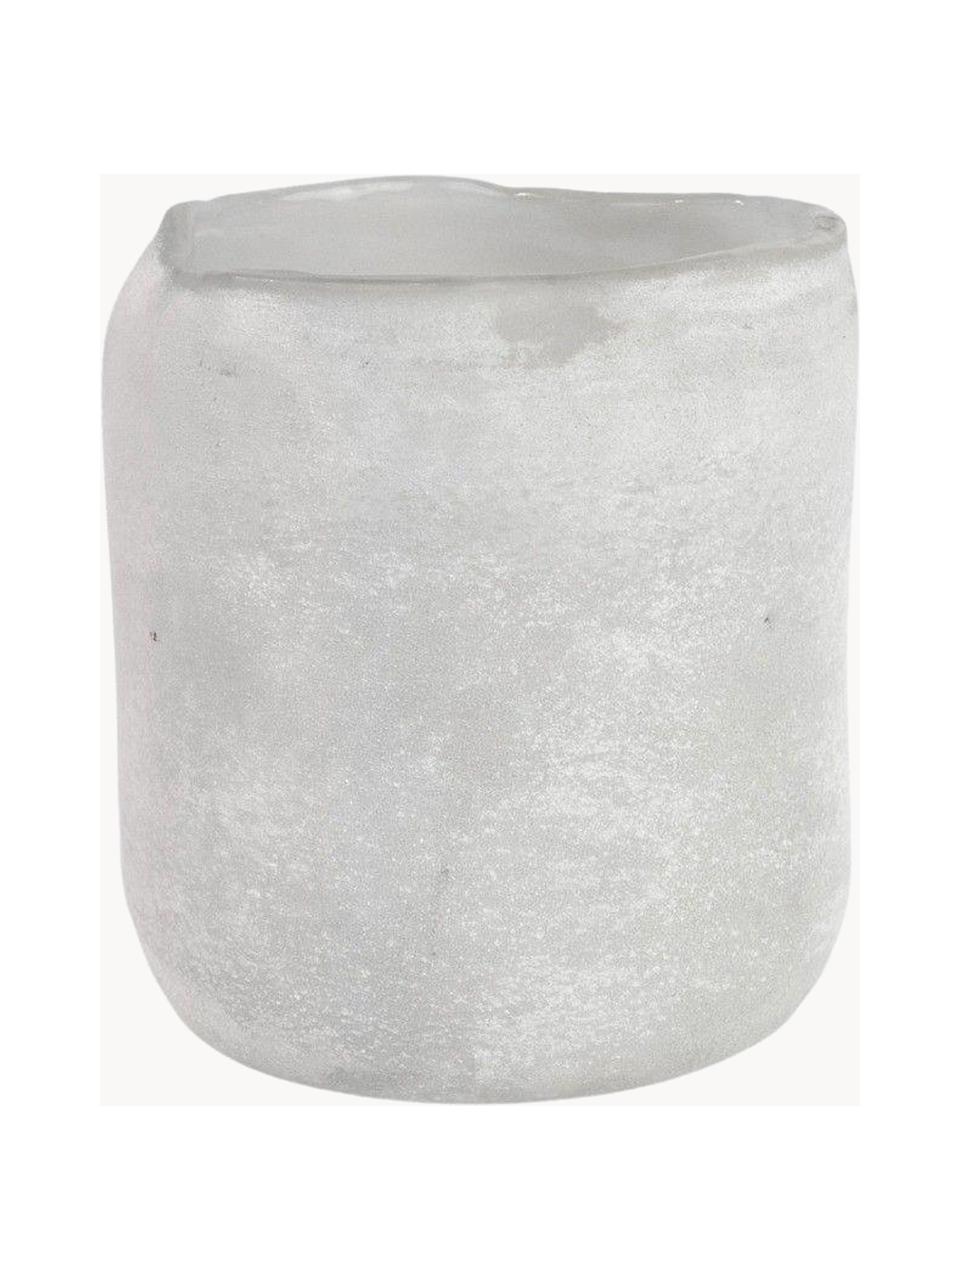 Teelichthalter Halde mit matter Oberfläche, Glas, Hellgrau, Weiss, Ø 11 x H 12 cm